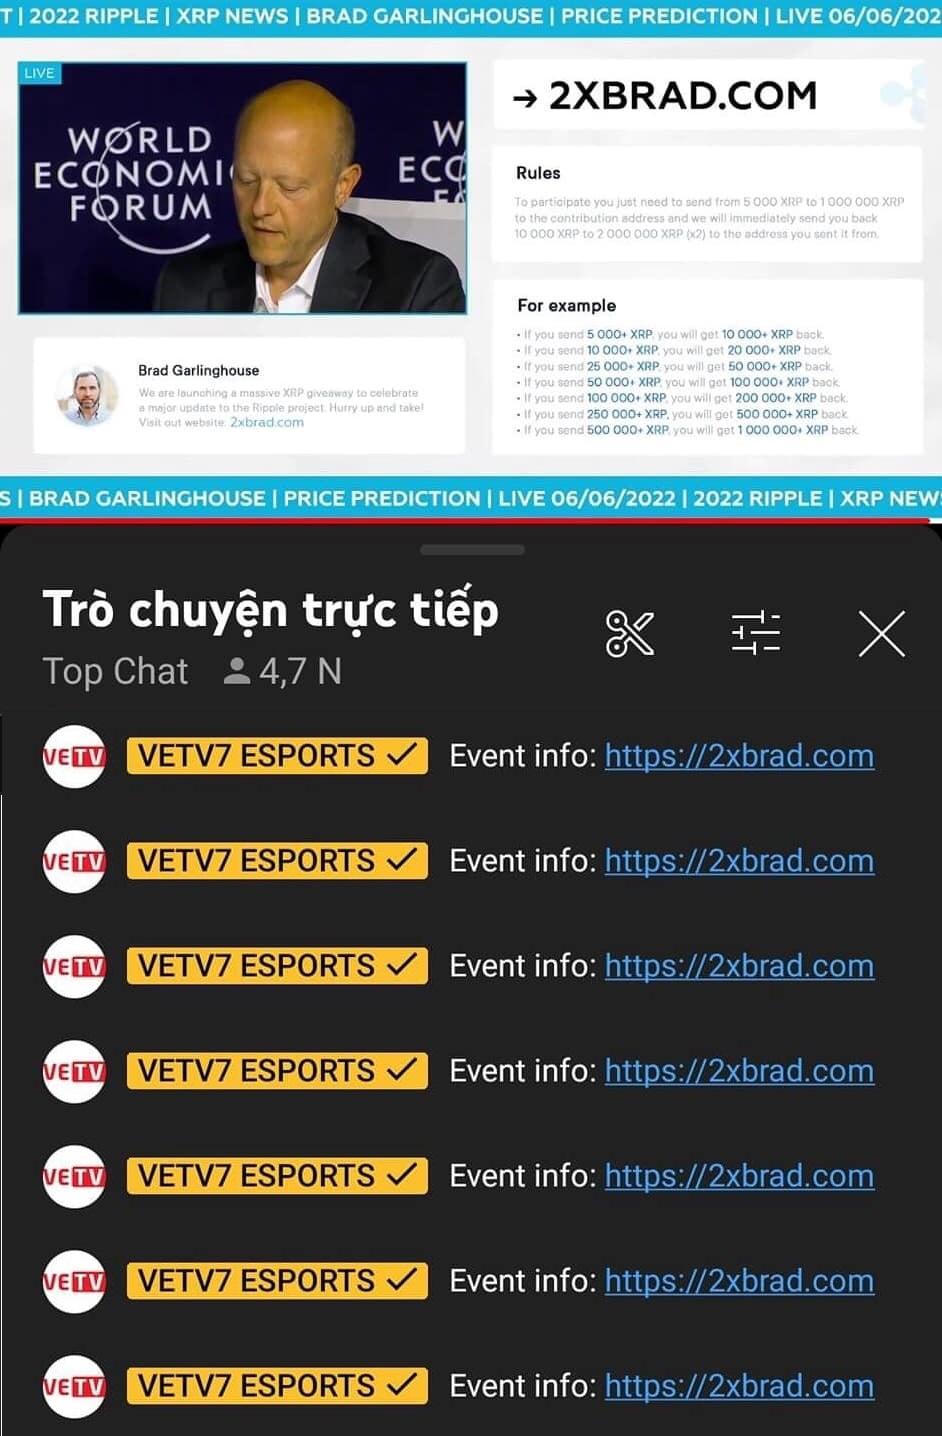 Kênh VETV7 Esports bất ngờ bị chiếm dụng để phát sóng livestream quảng cáo tiền ảo